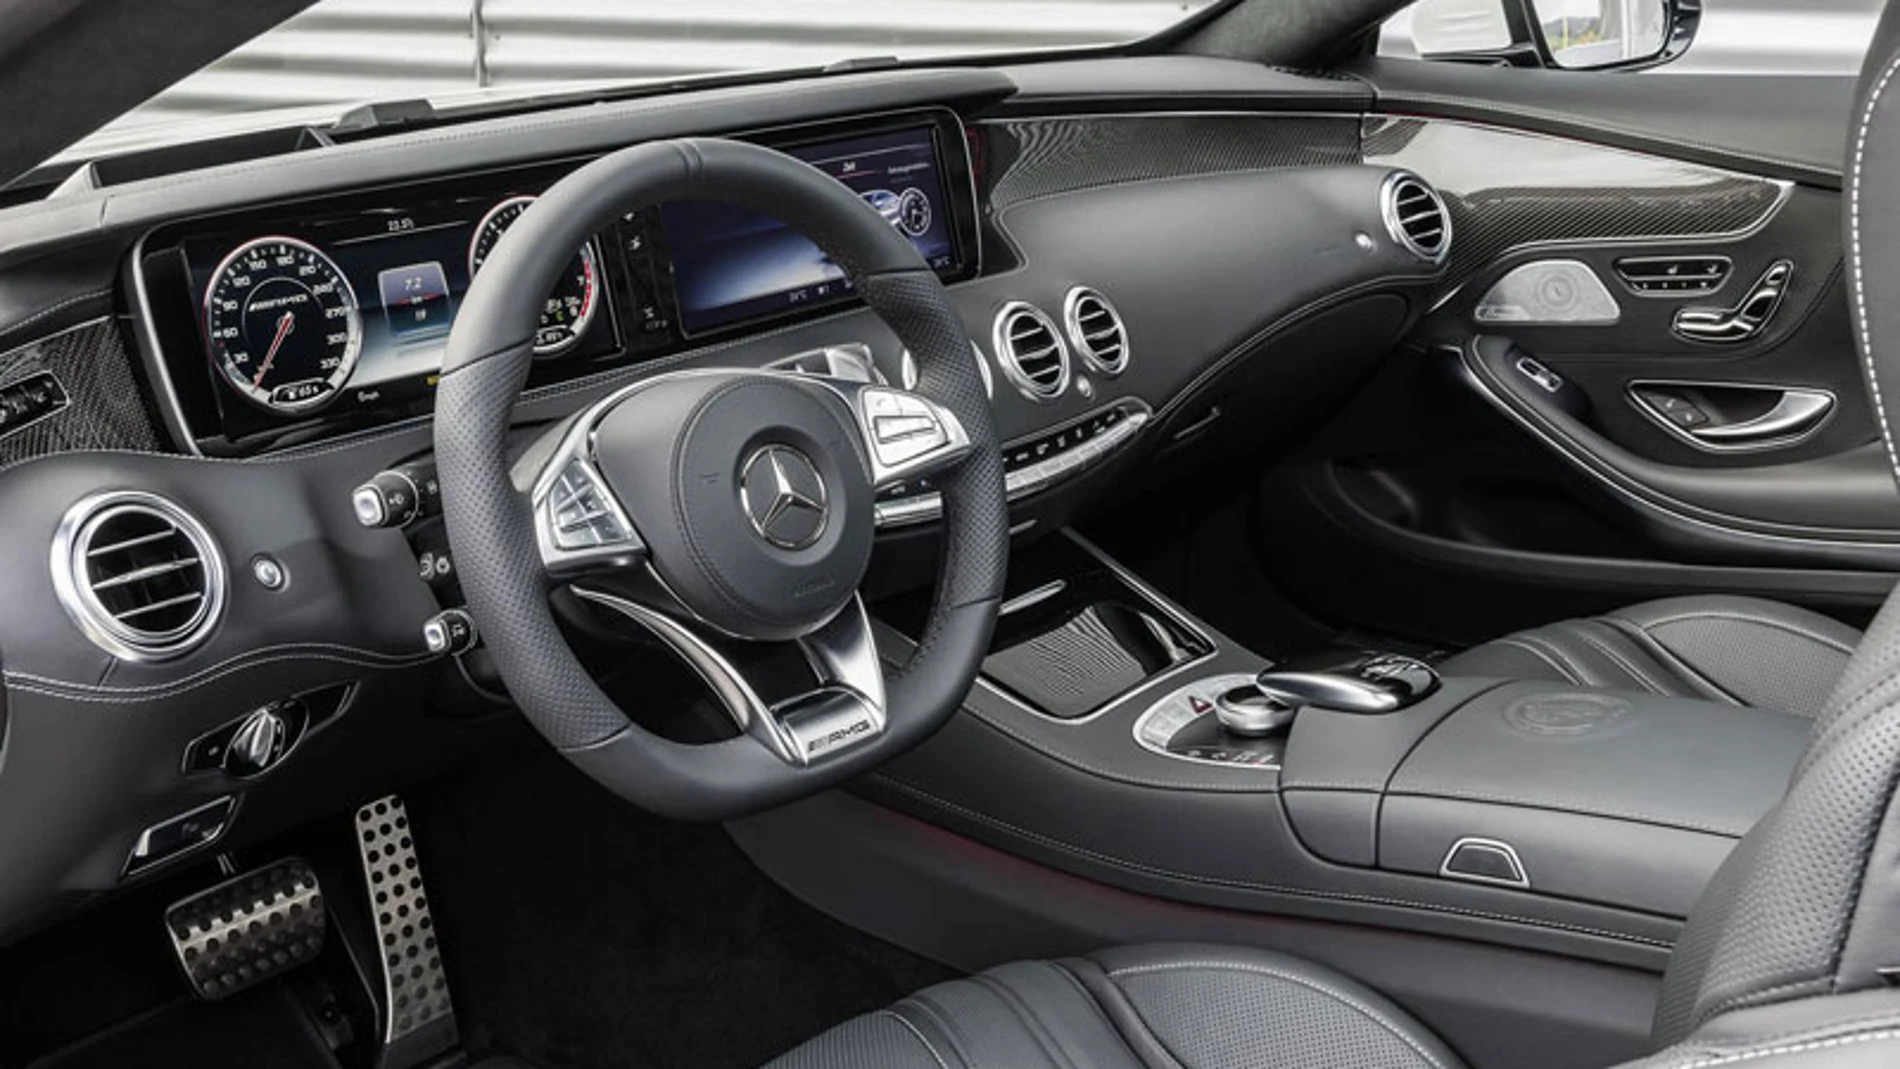 El interior cuenta con elementos exclusivos, como el volante de tres radios con la leyenda AMG.